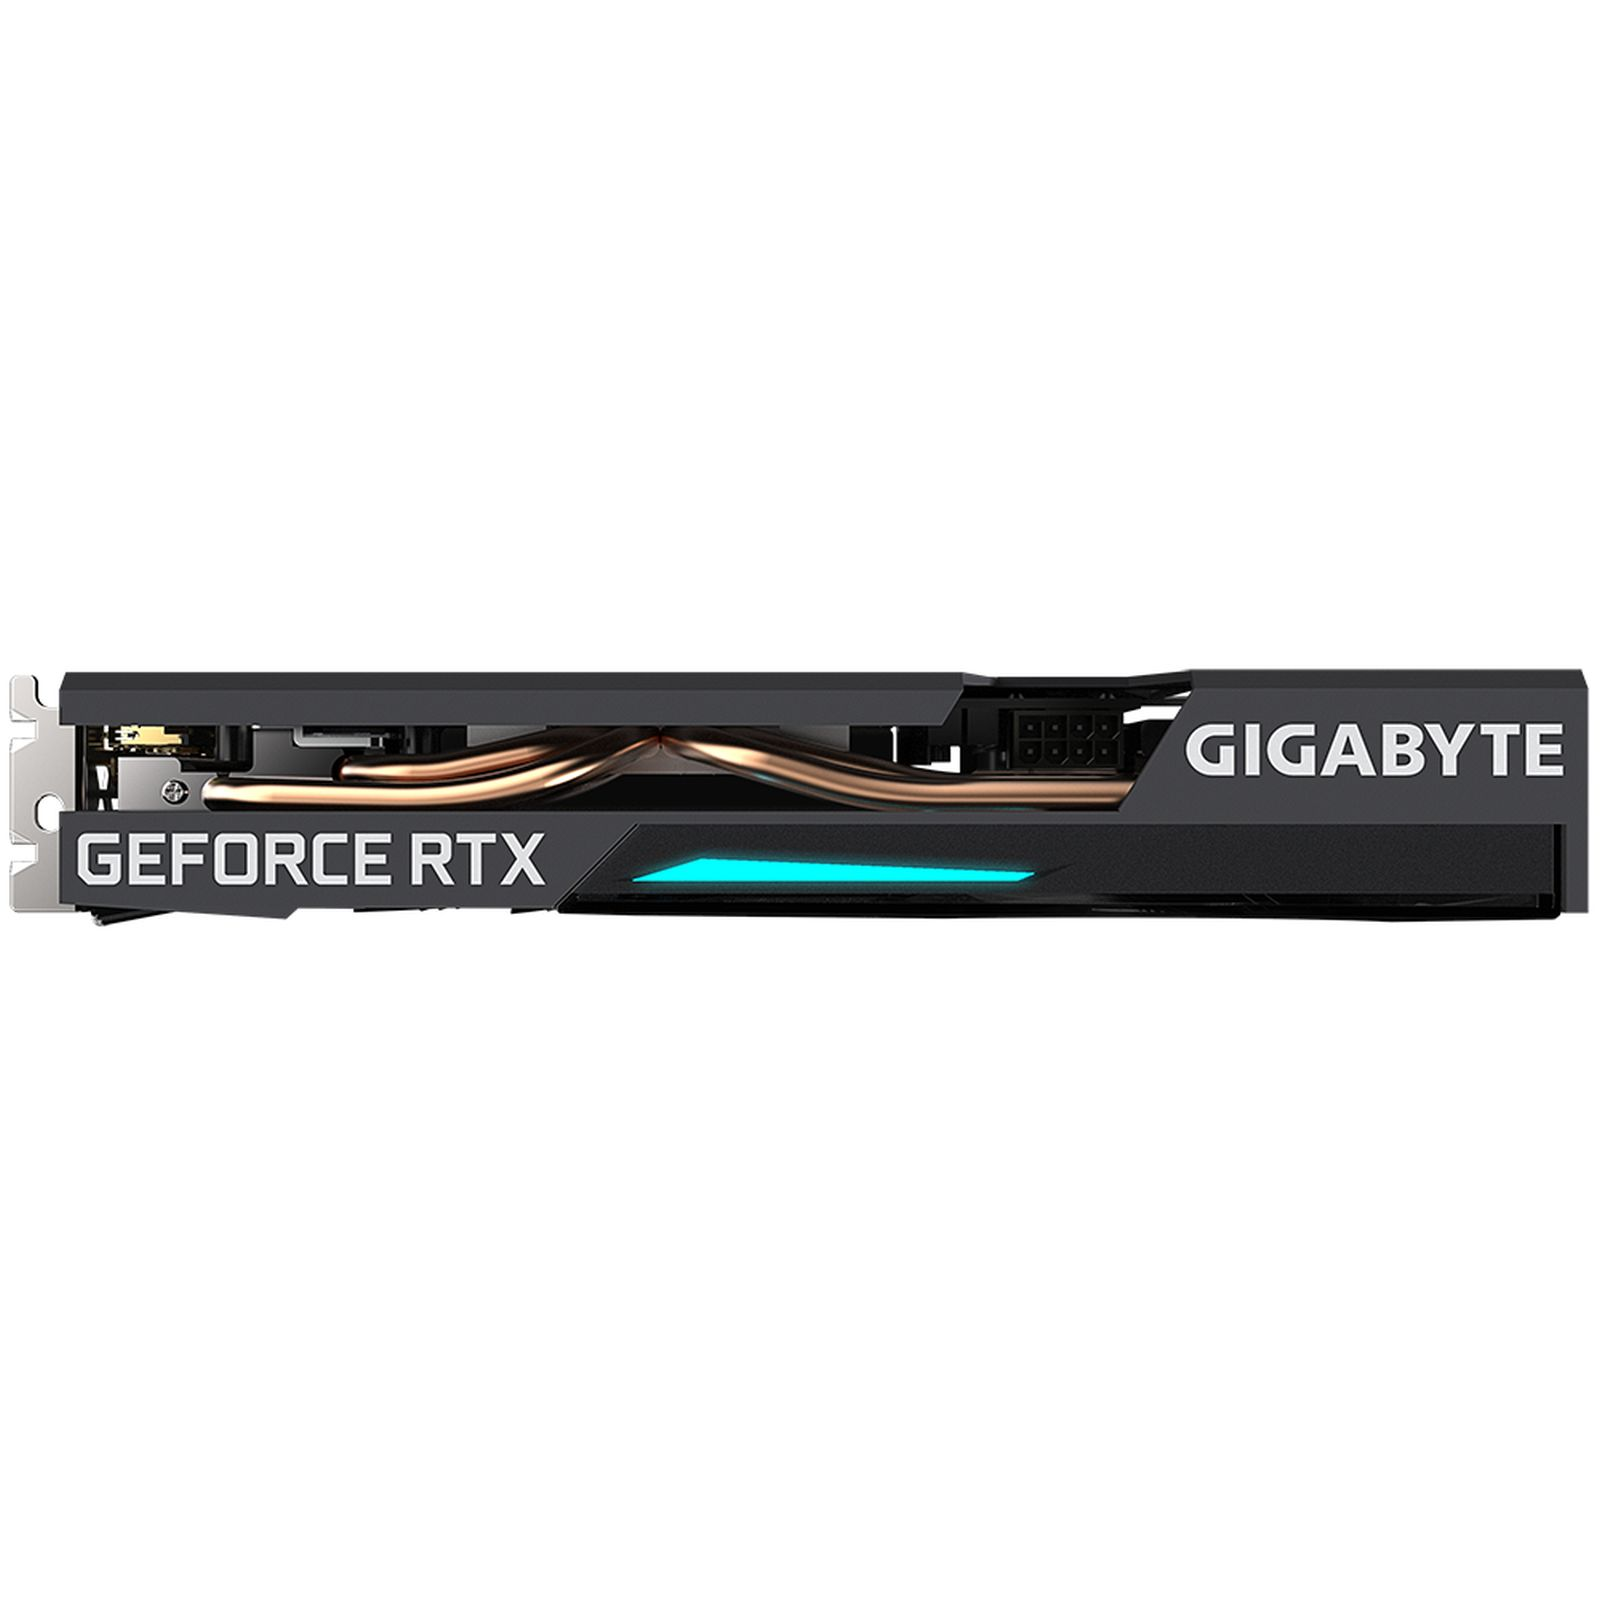 GIGABYTE GeForce RTX OC 2.0) 12G Grafikkarte) EAGLE (rev. (NVIDIA, 3060